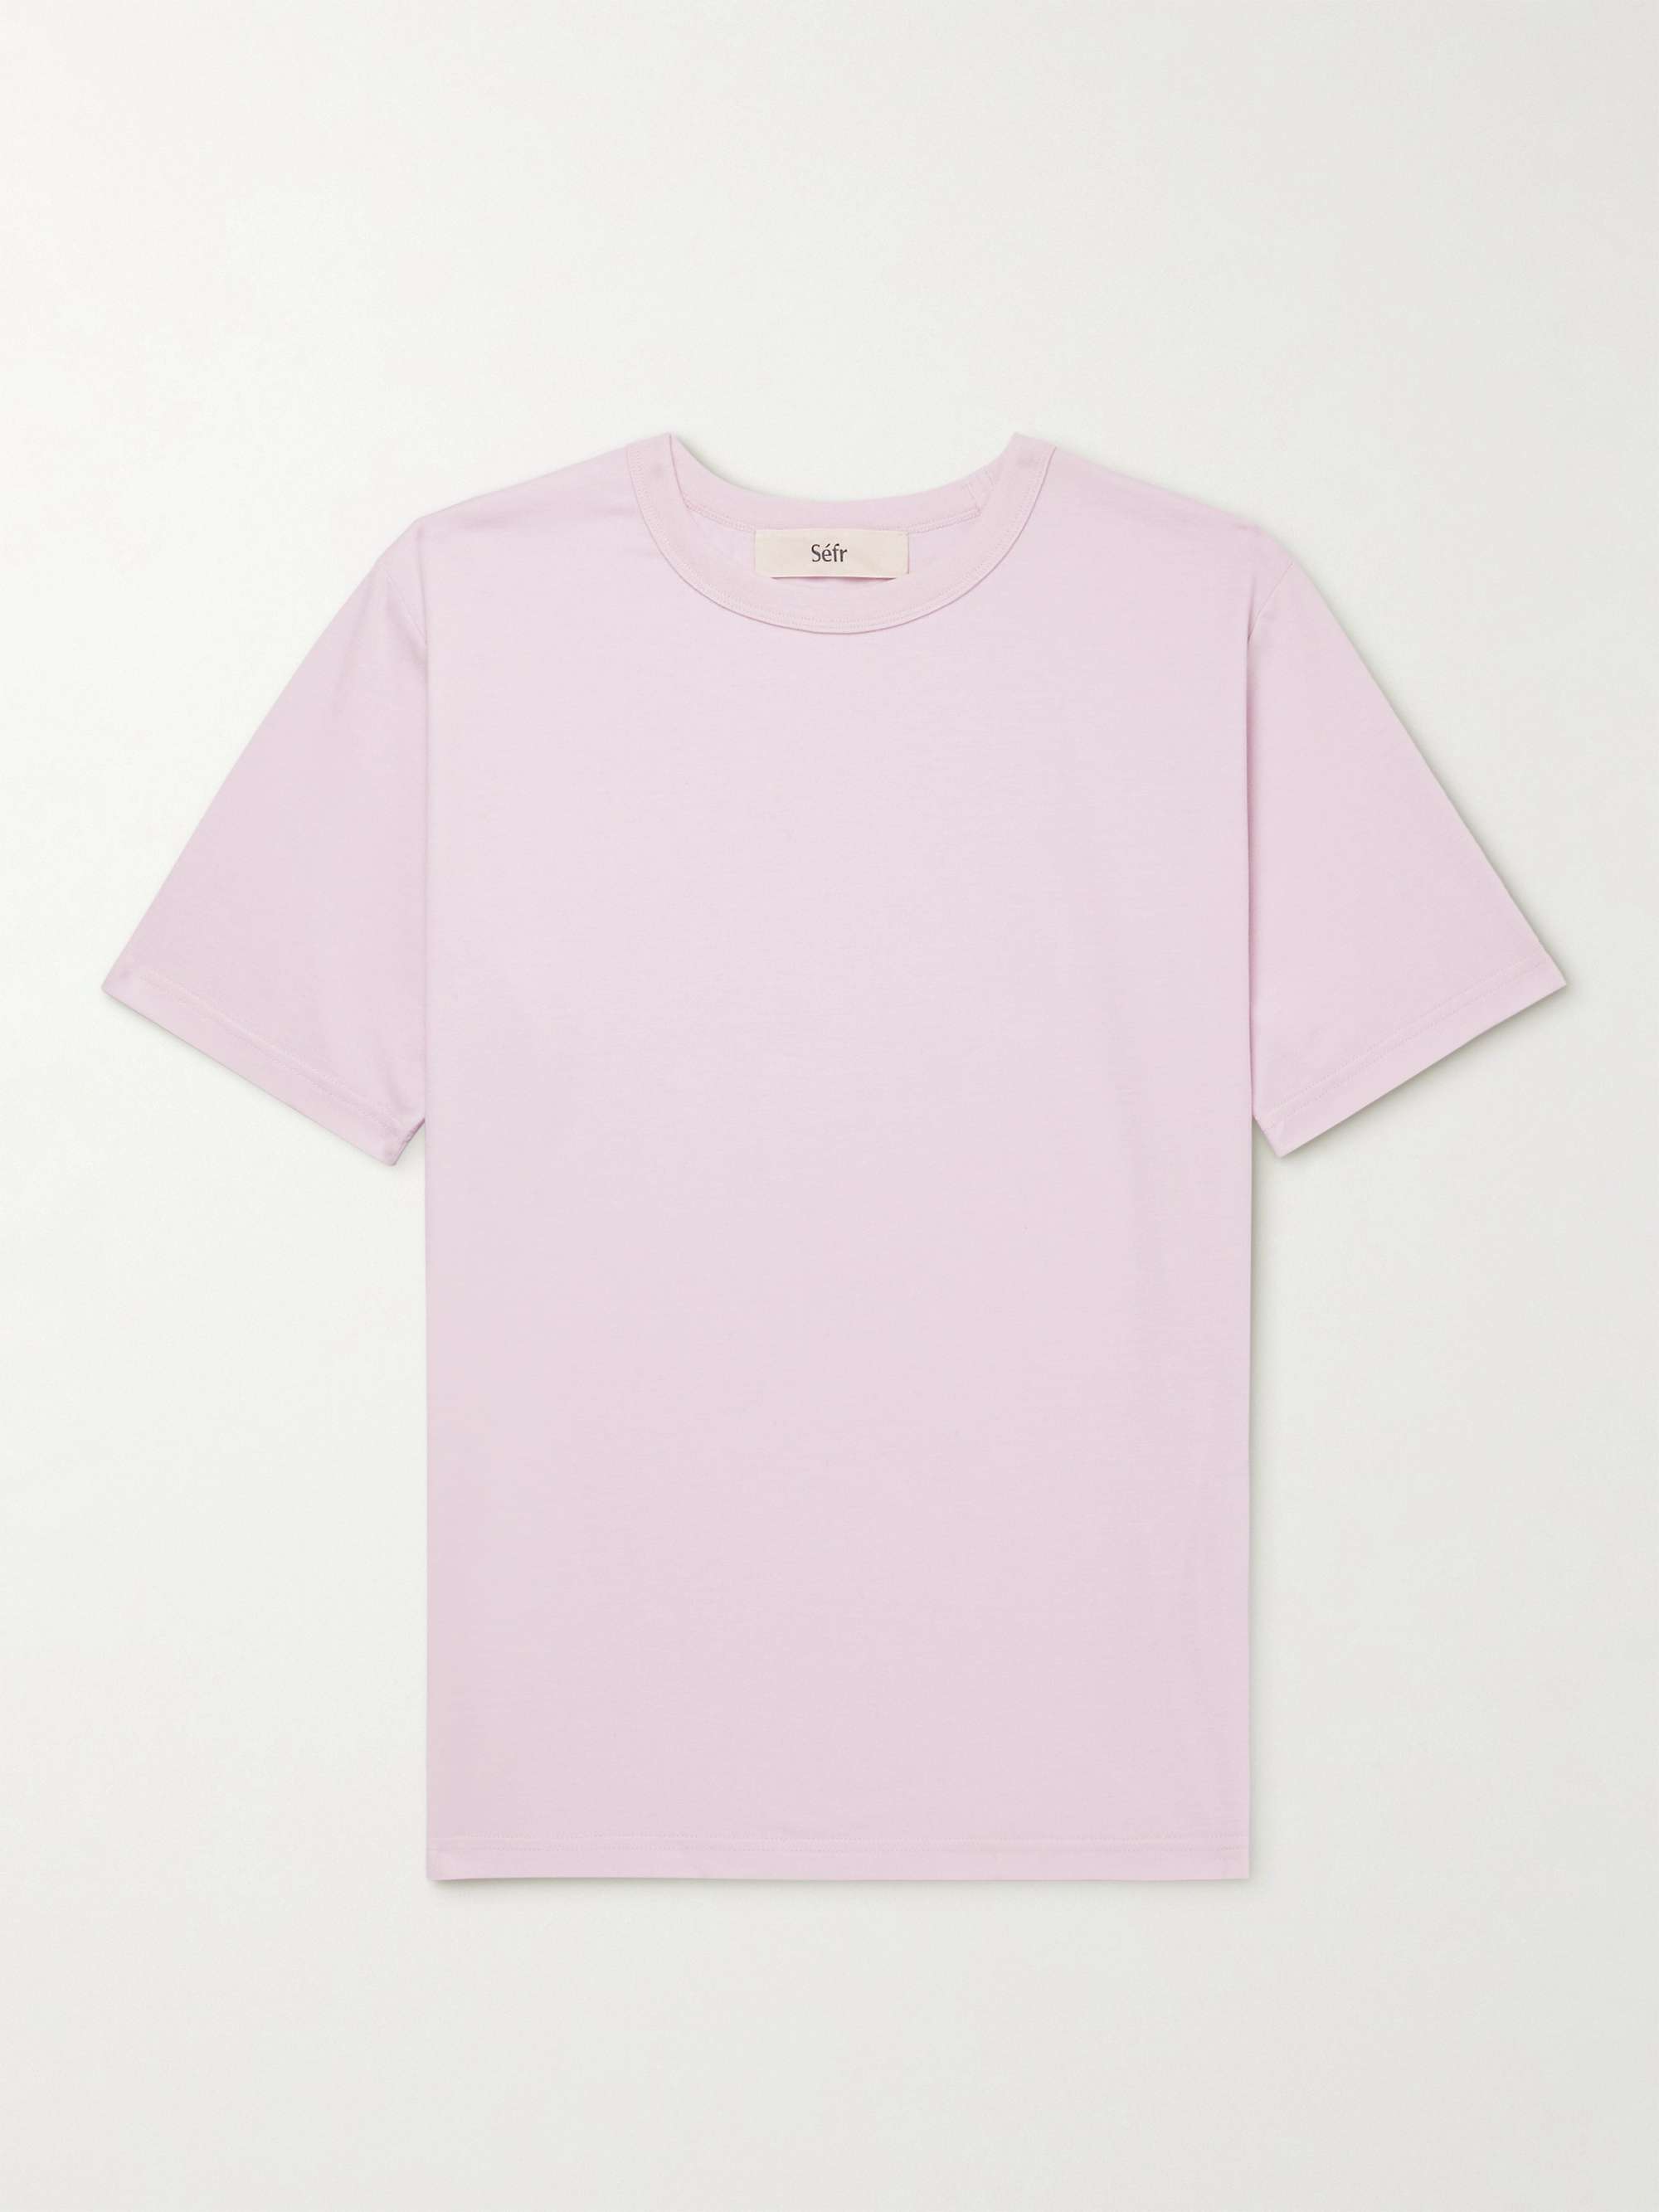 SÉFR Luca Cotton-Blend Jersey T-Shirt